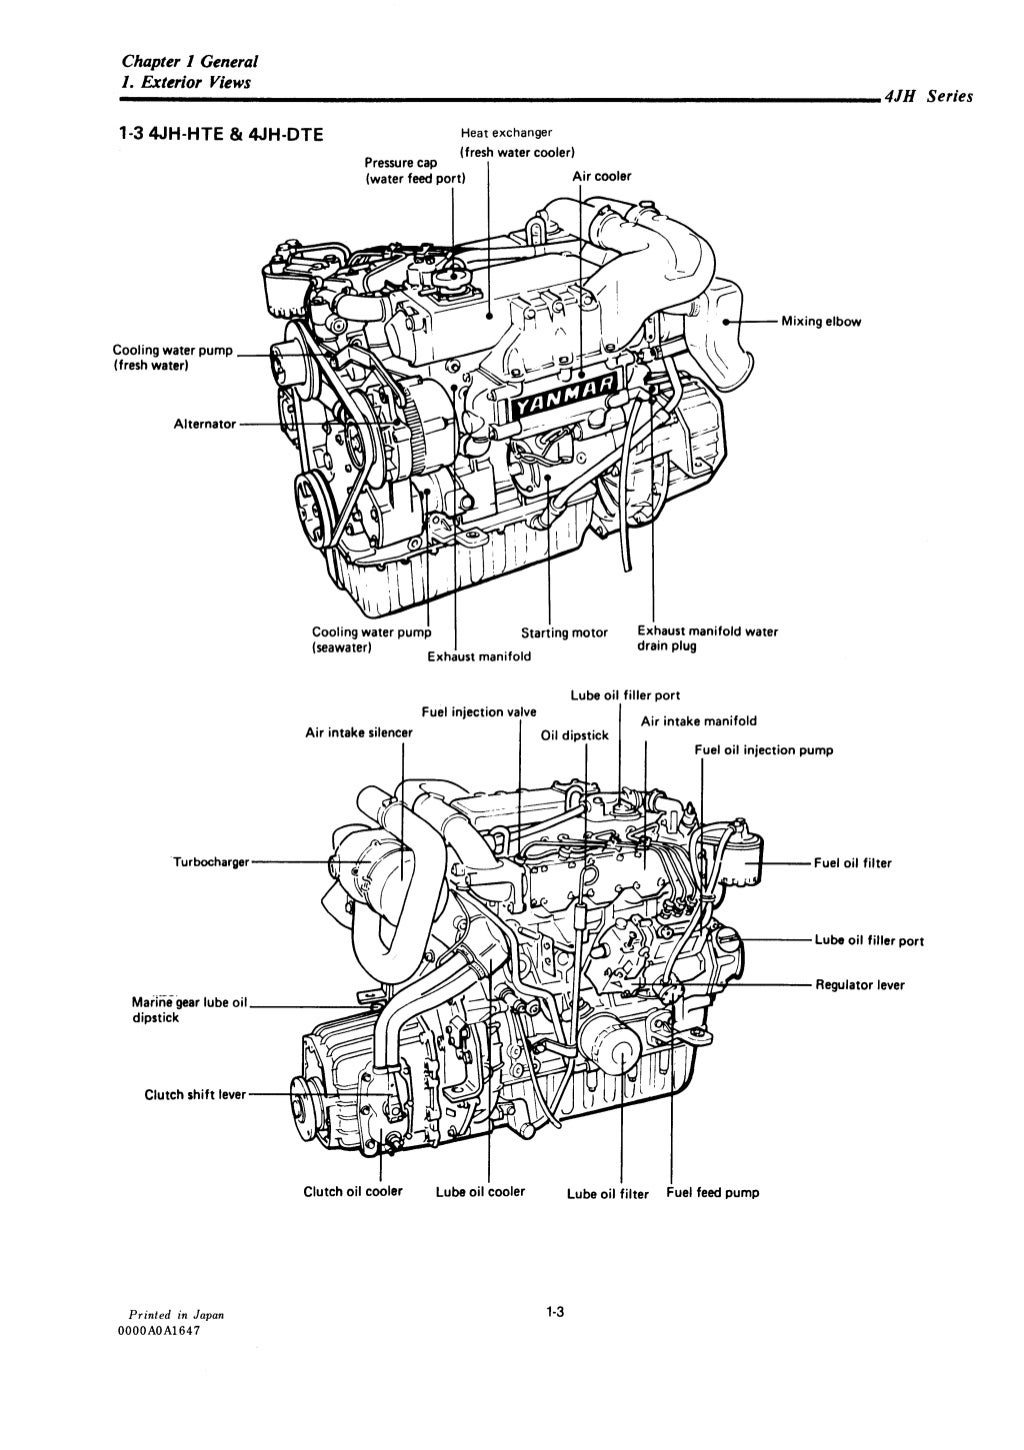 Yanmar 4 jhe marine diesel engine service repair manual